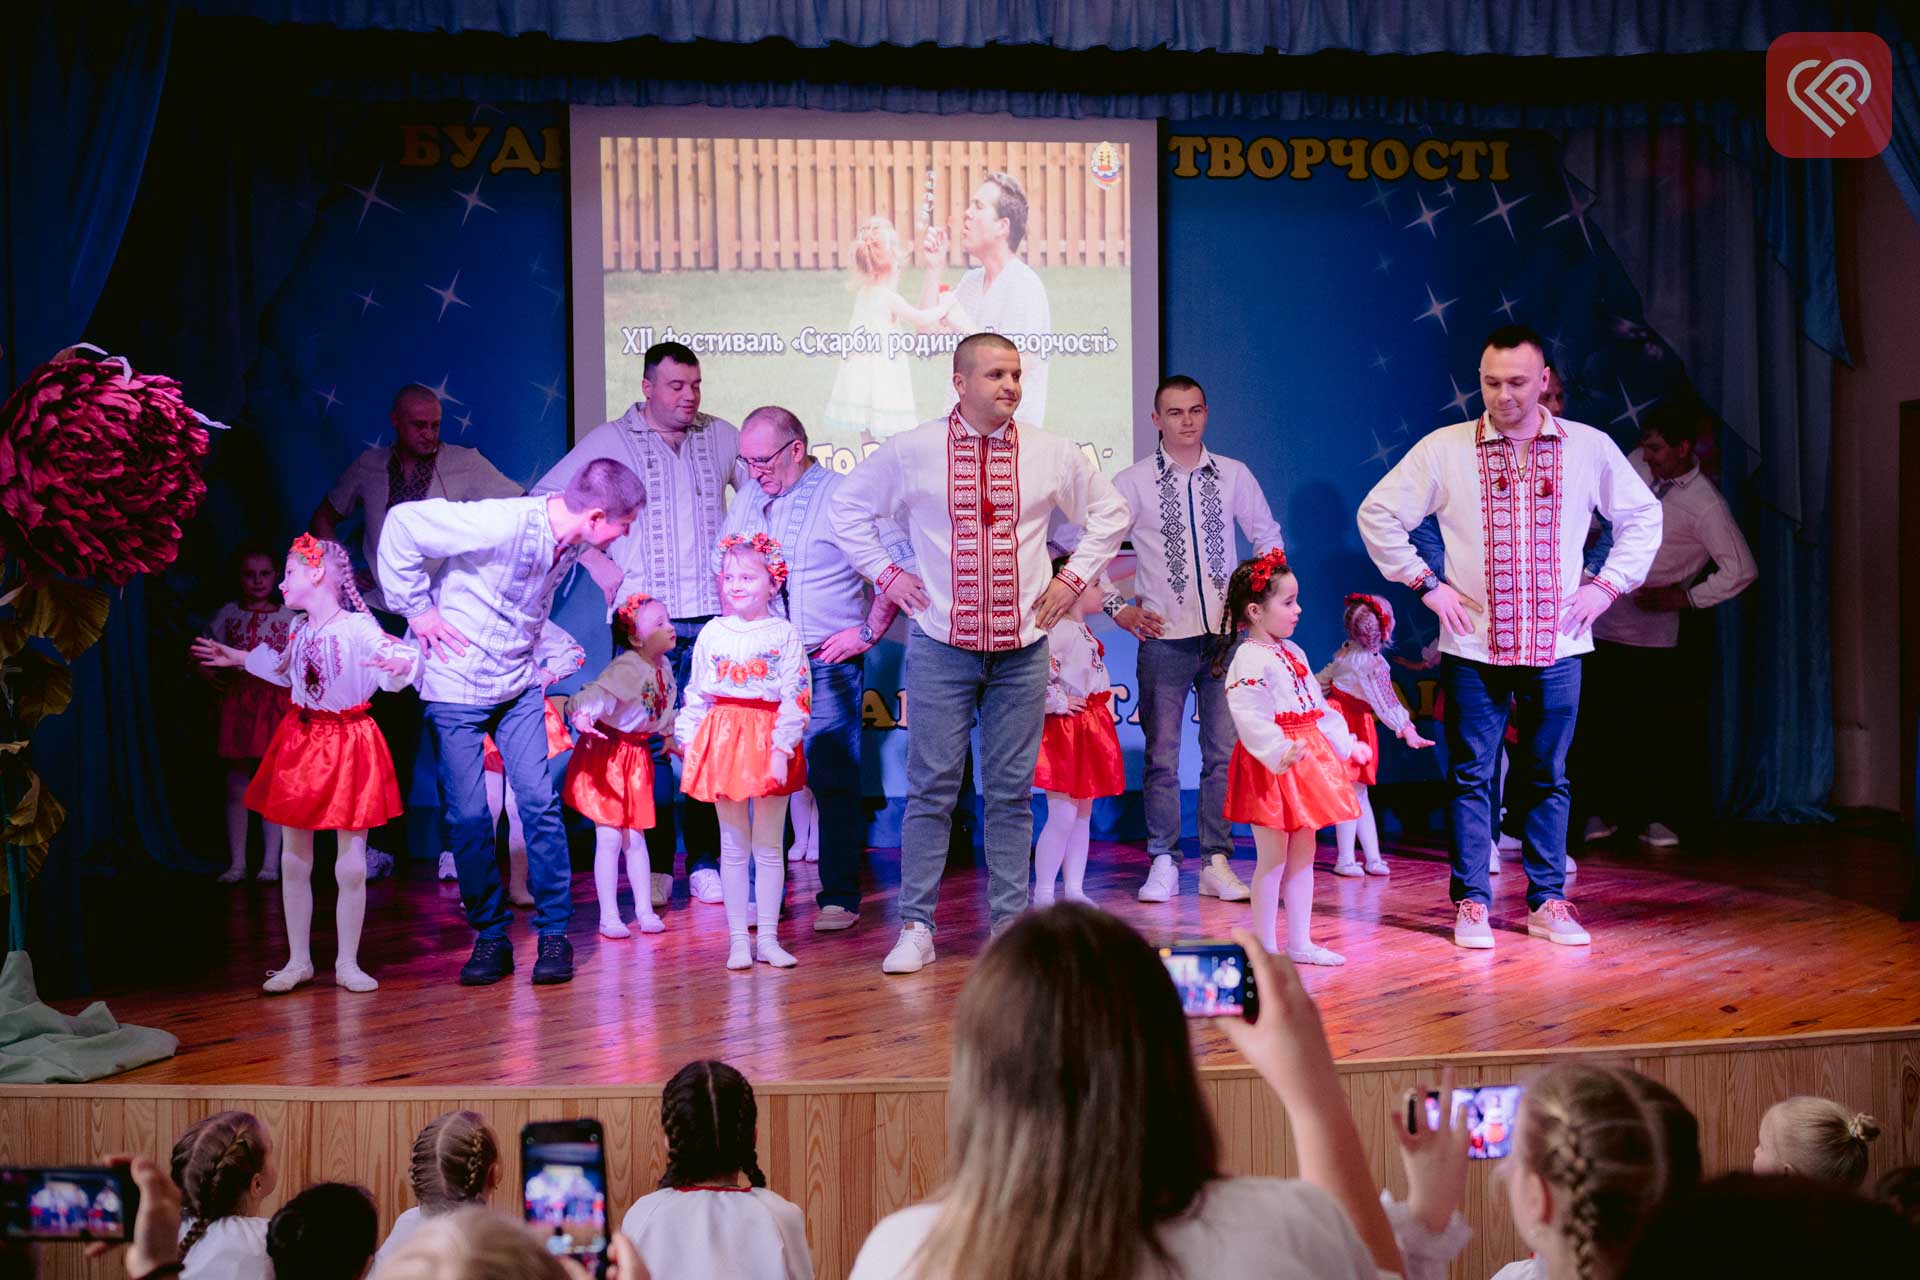 Танці з татами і дефіле з мамами: на родинному фестивалі в Переяславі юні артисти виступали зі своїми рідними (відео)